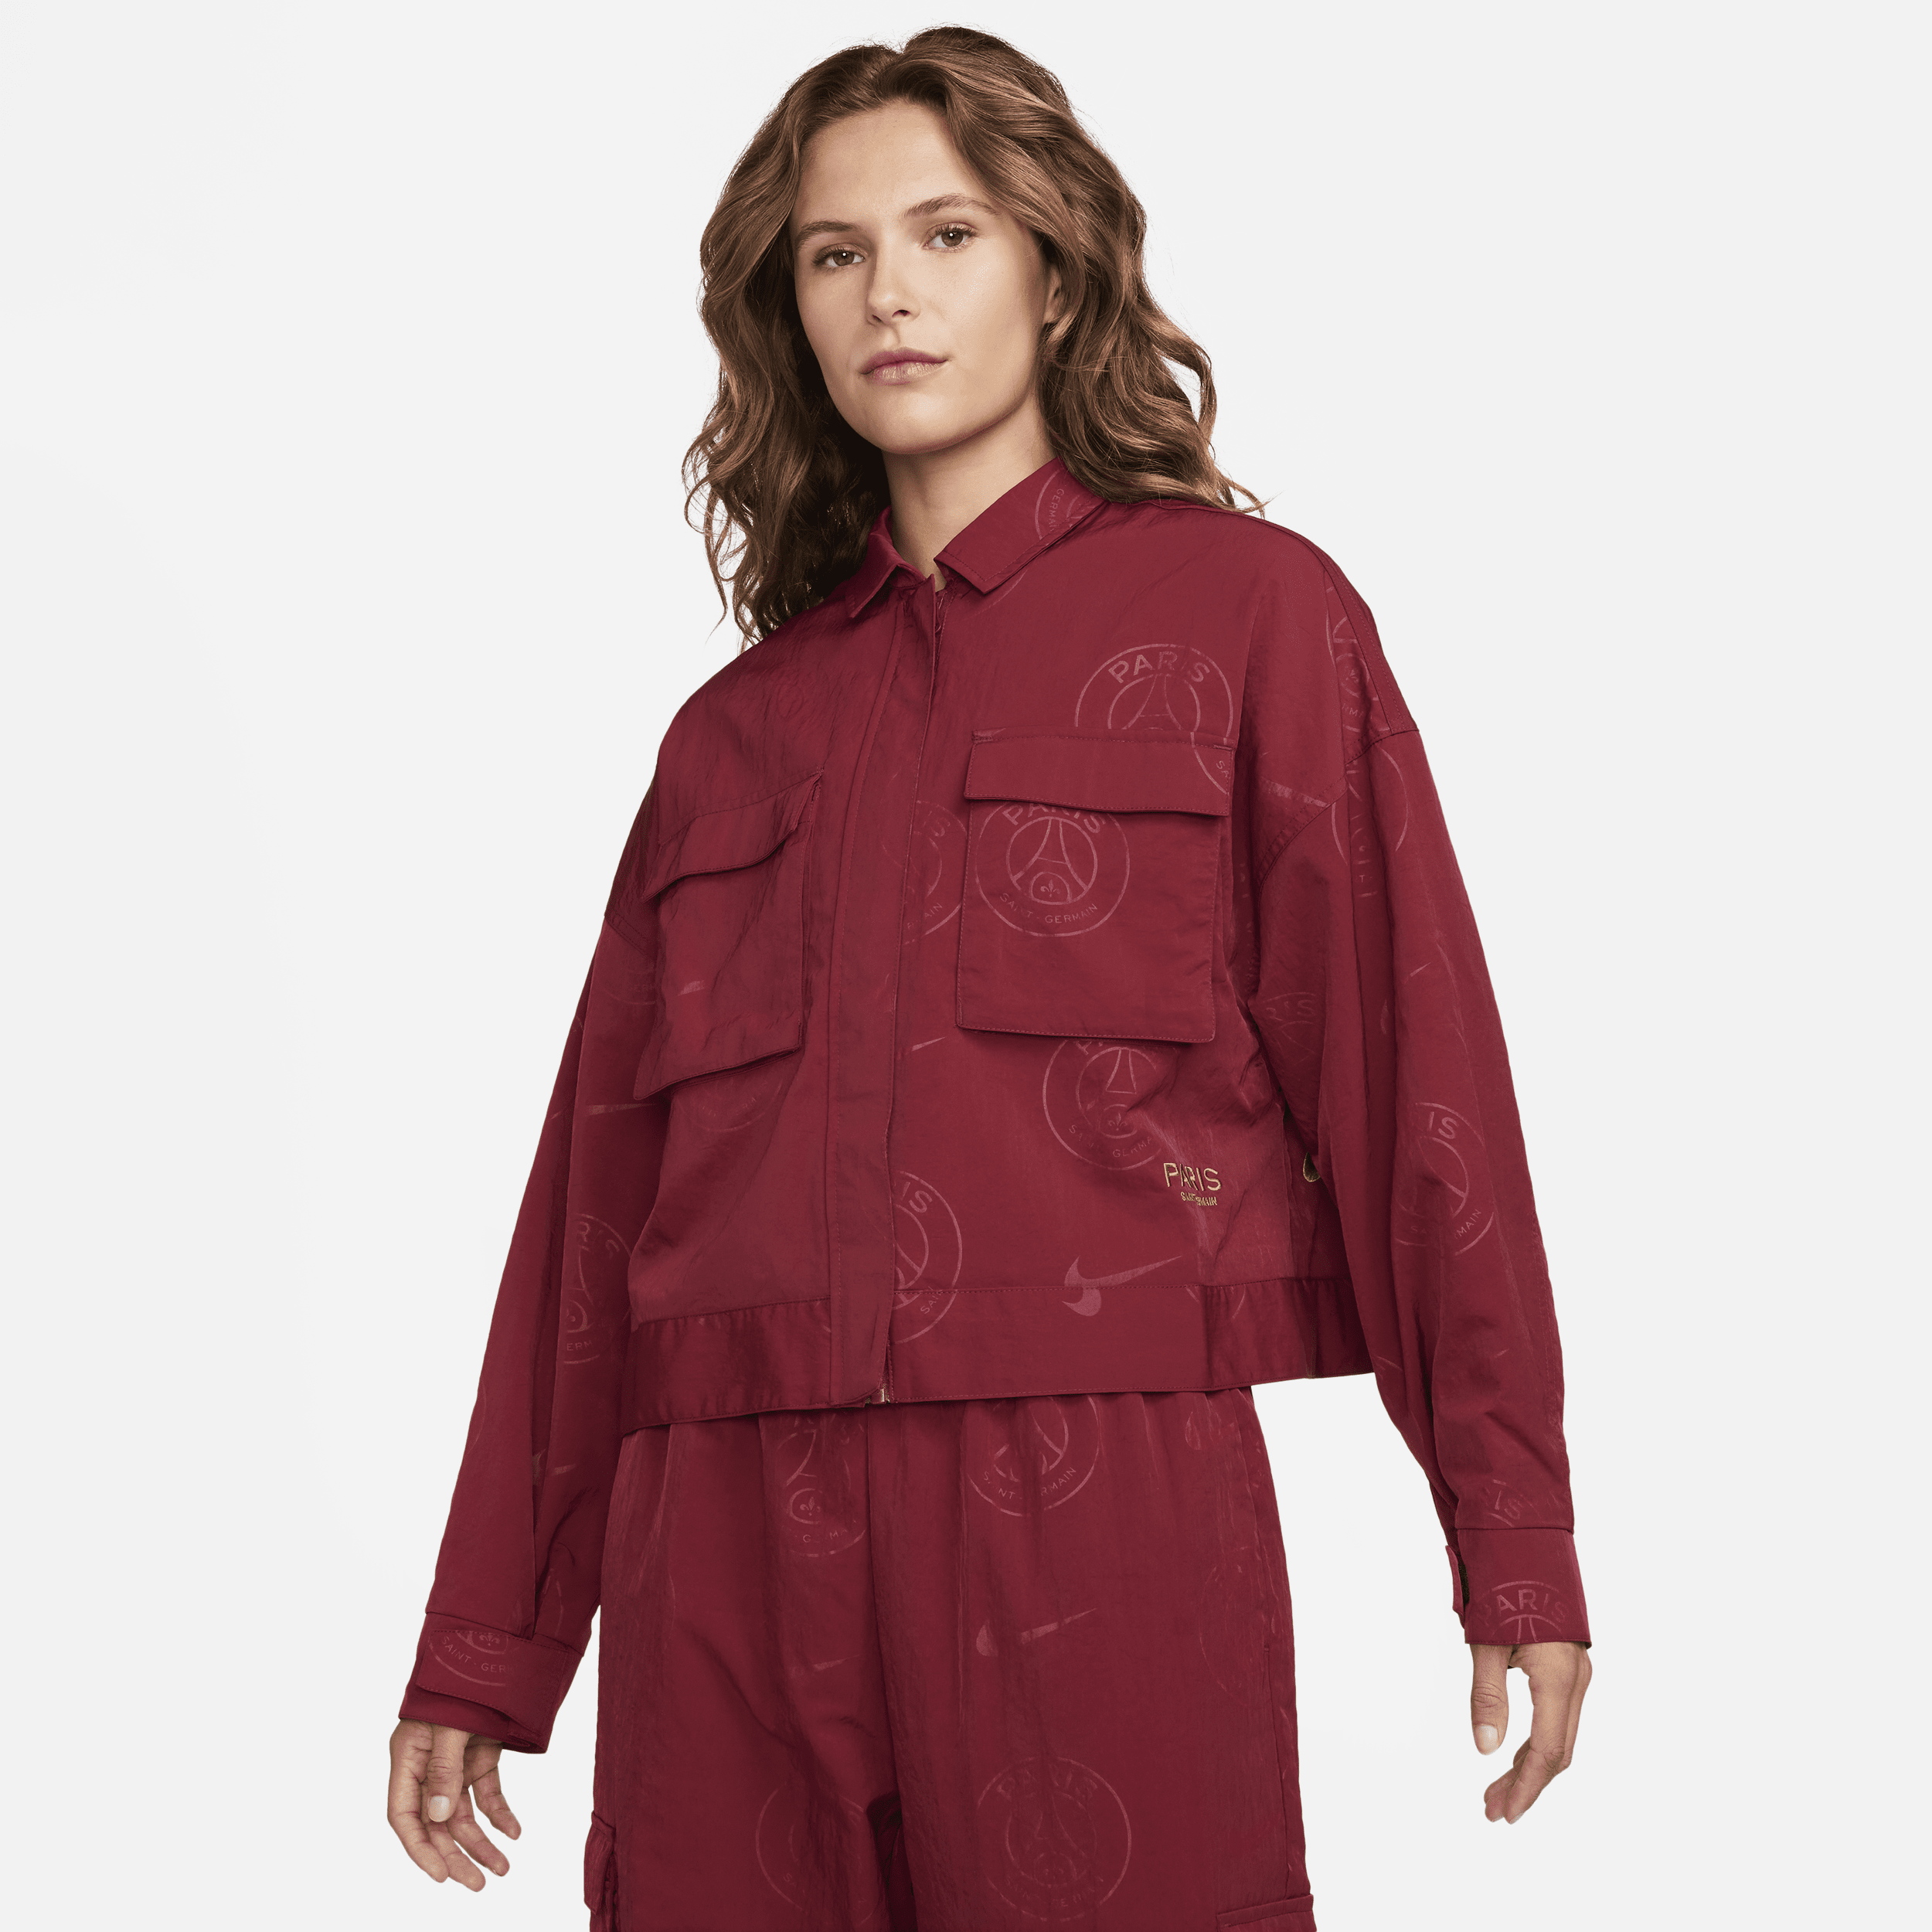 Vævet Paris Saint-Germain Essential Nike-jakke med grafik til kvinder - rød